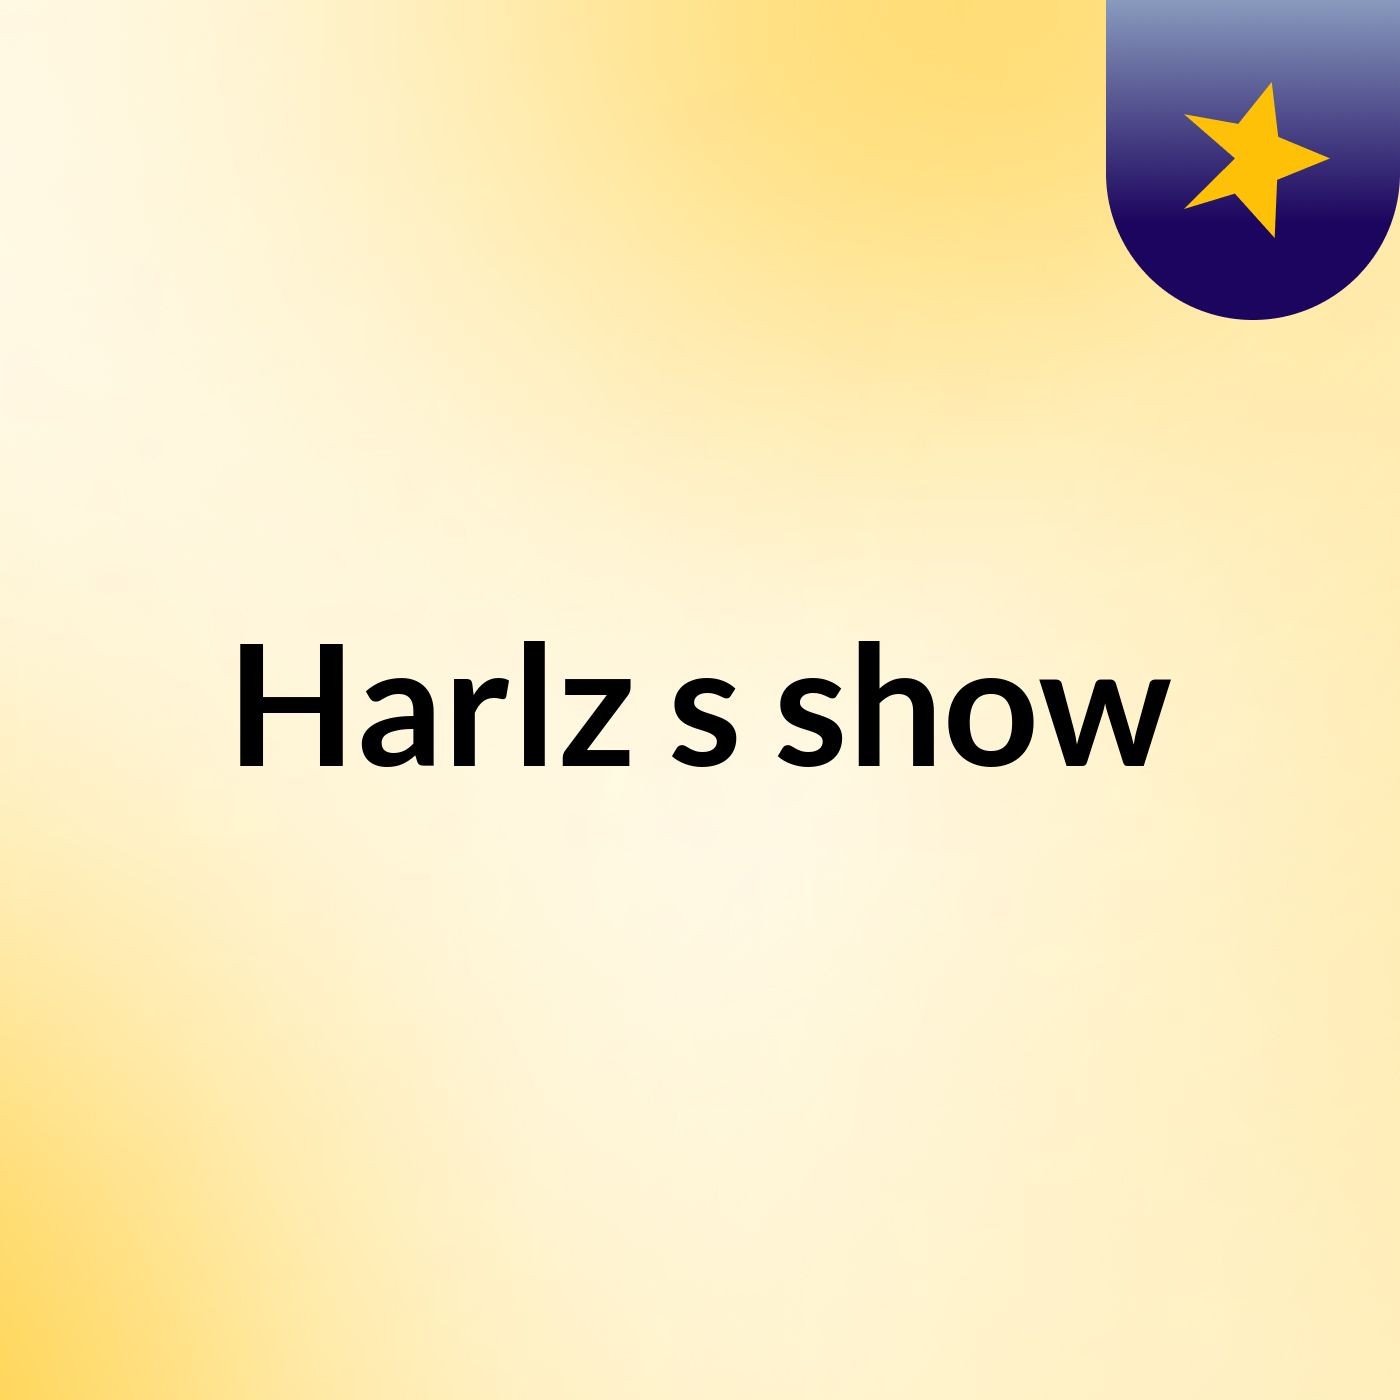 Harlz's show